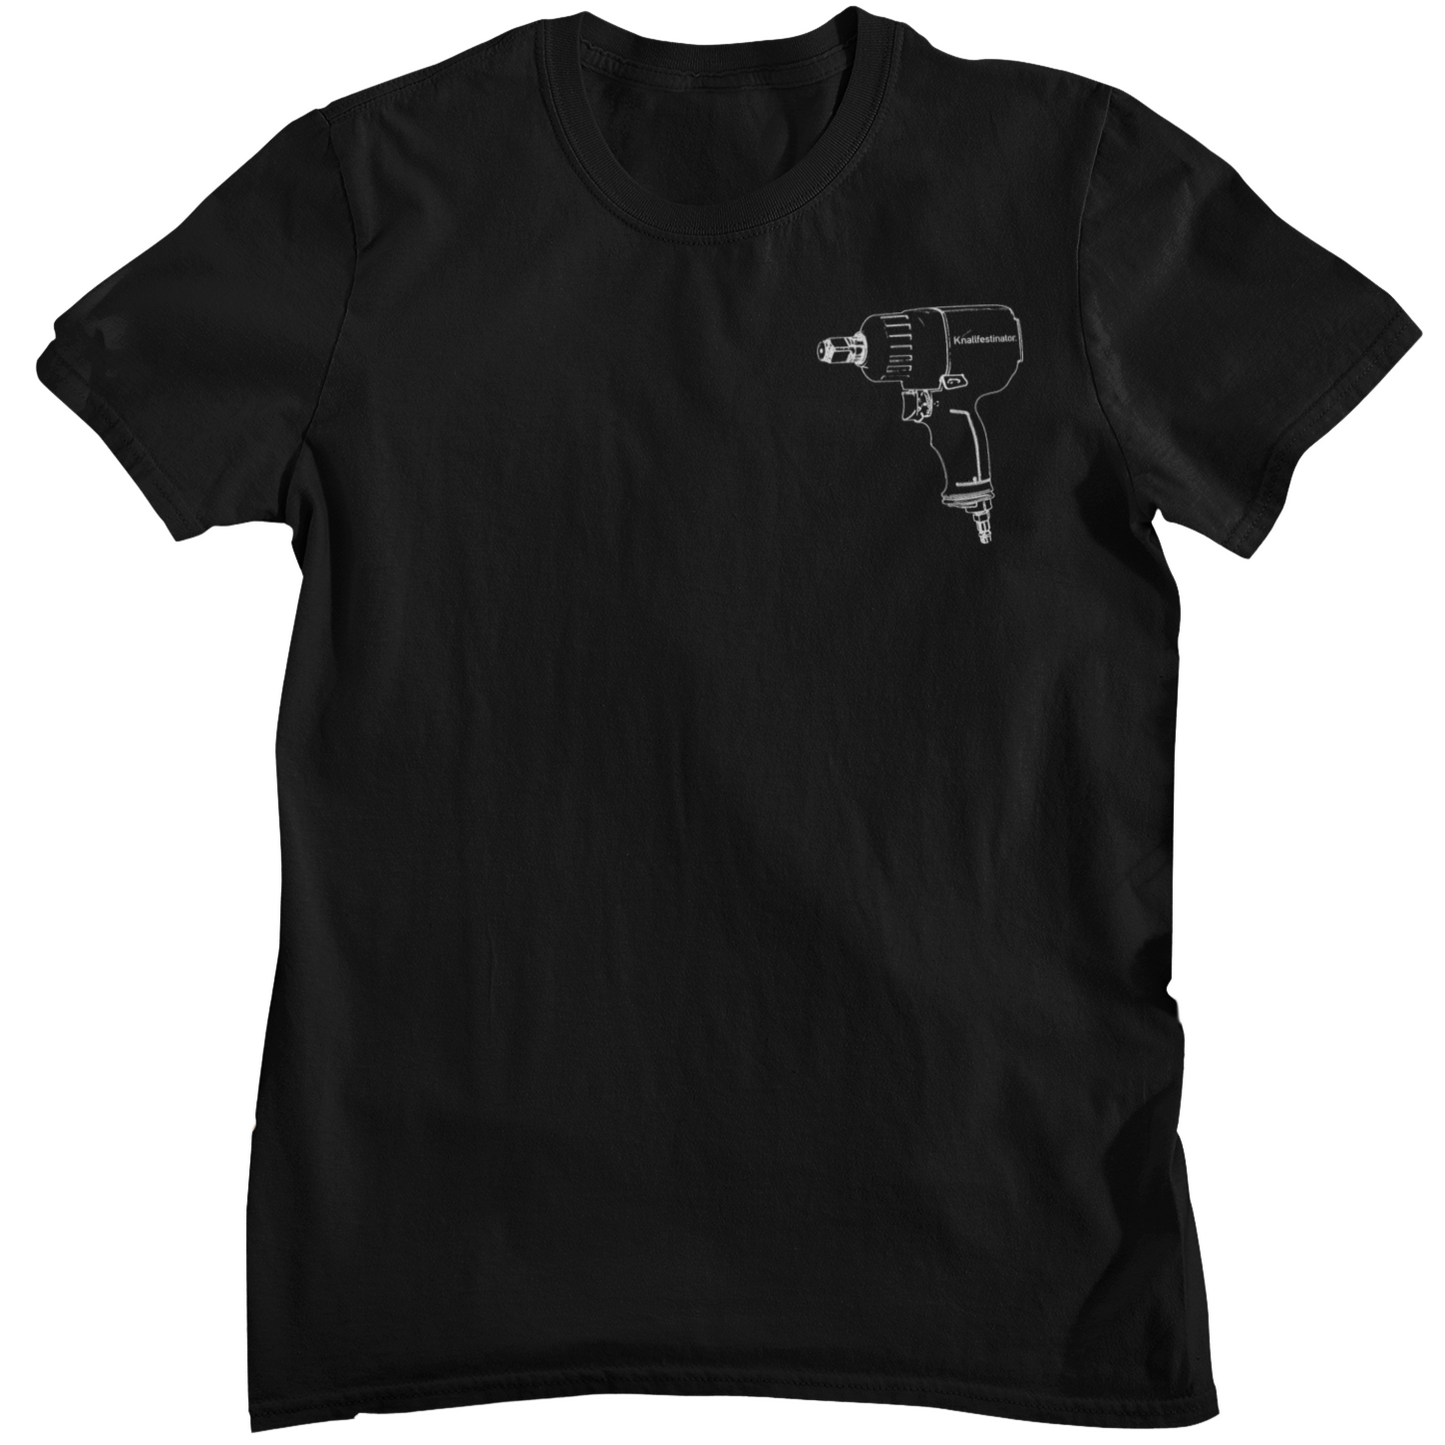 Knallfestinator - Unisex Shirt